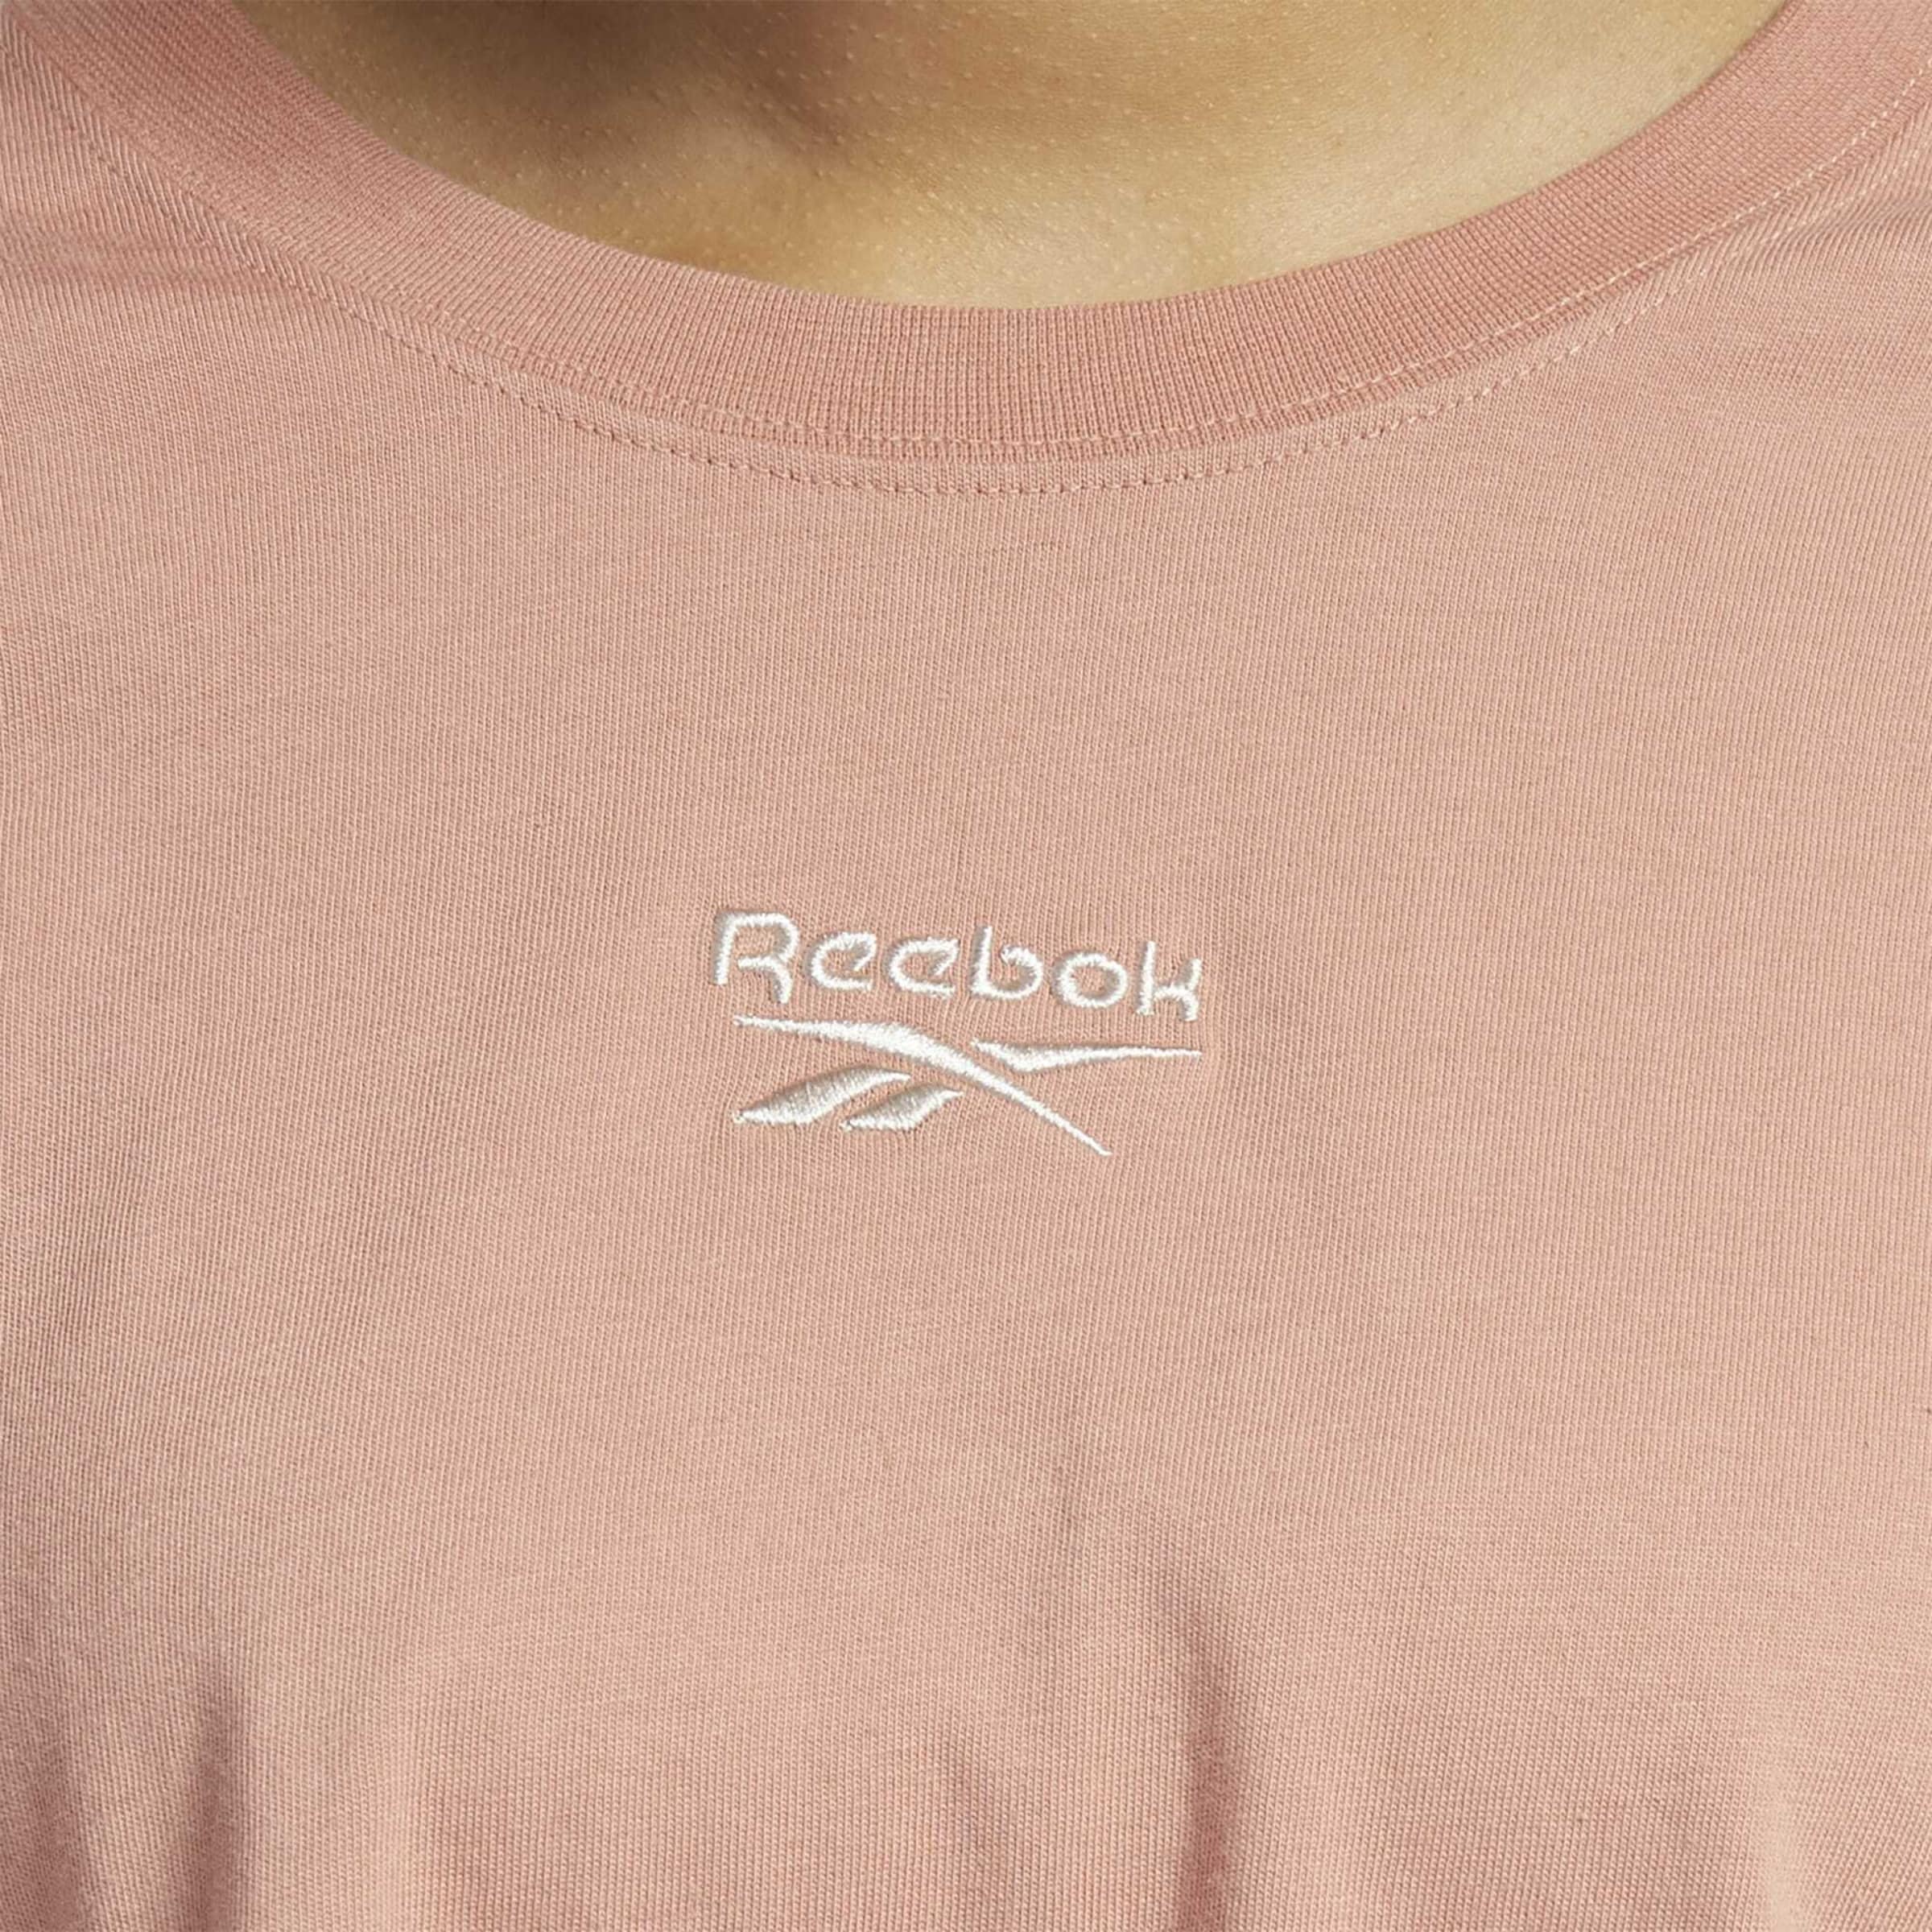 Frauen Shirts & Tops Reebok Classics Shirt in Pastellrot - DE16414